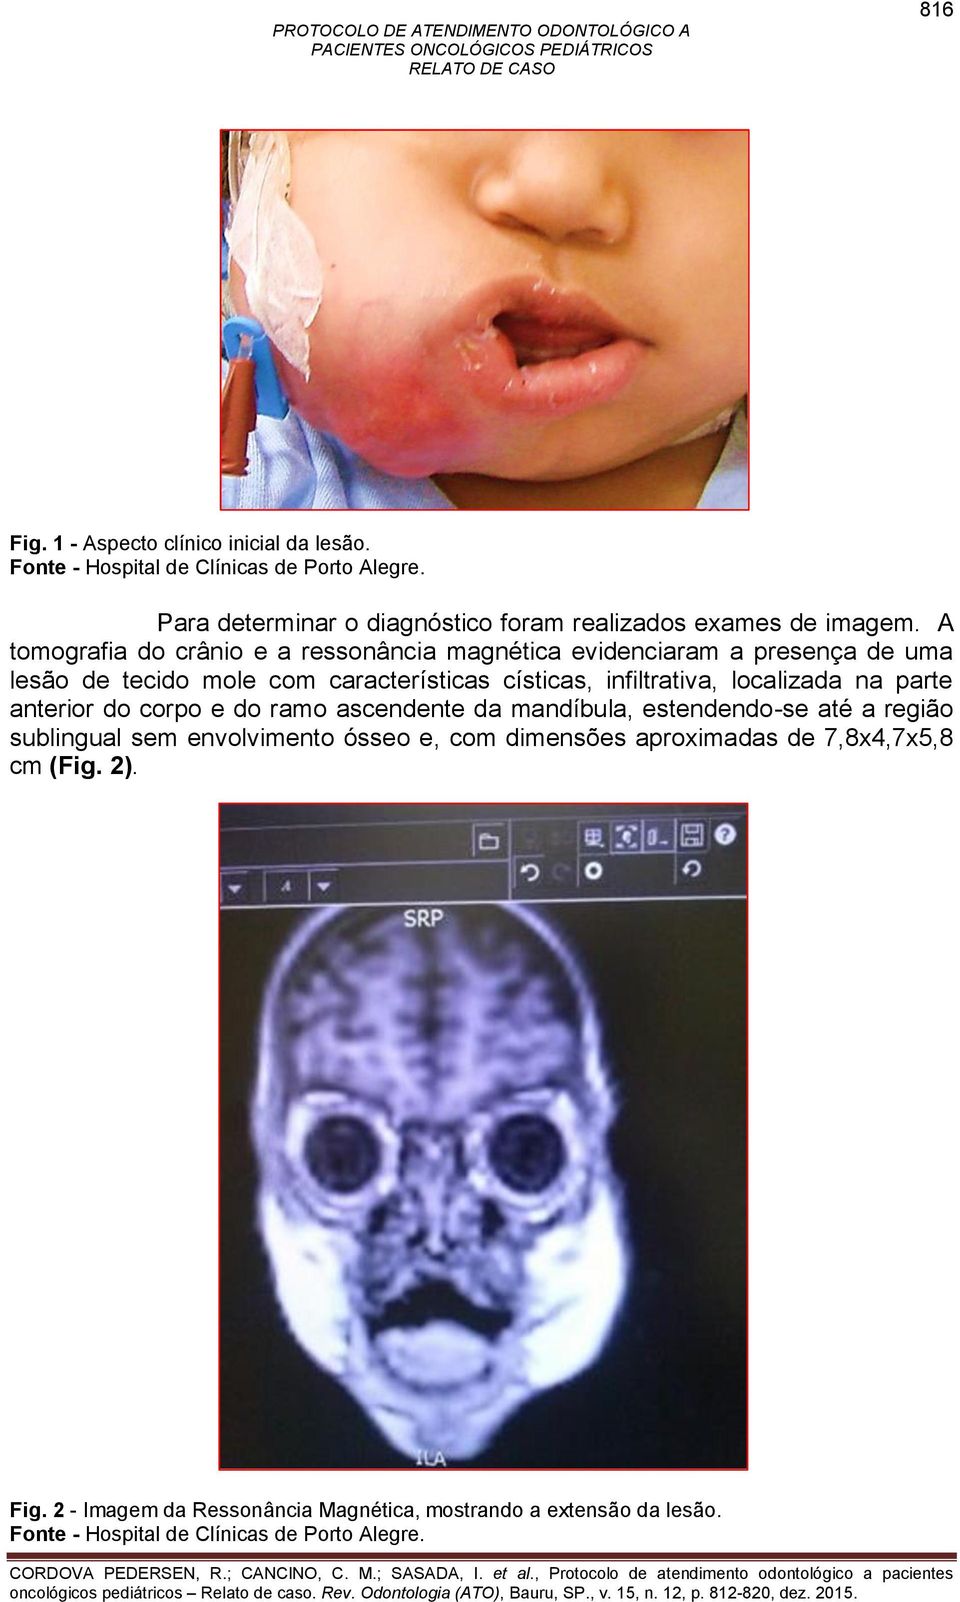 A tomografia do crânio e a ressonância magnética evidenciaram a presença de uma lesão de tecido mole com características císticas, infiltrativa,